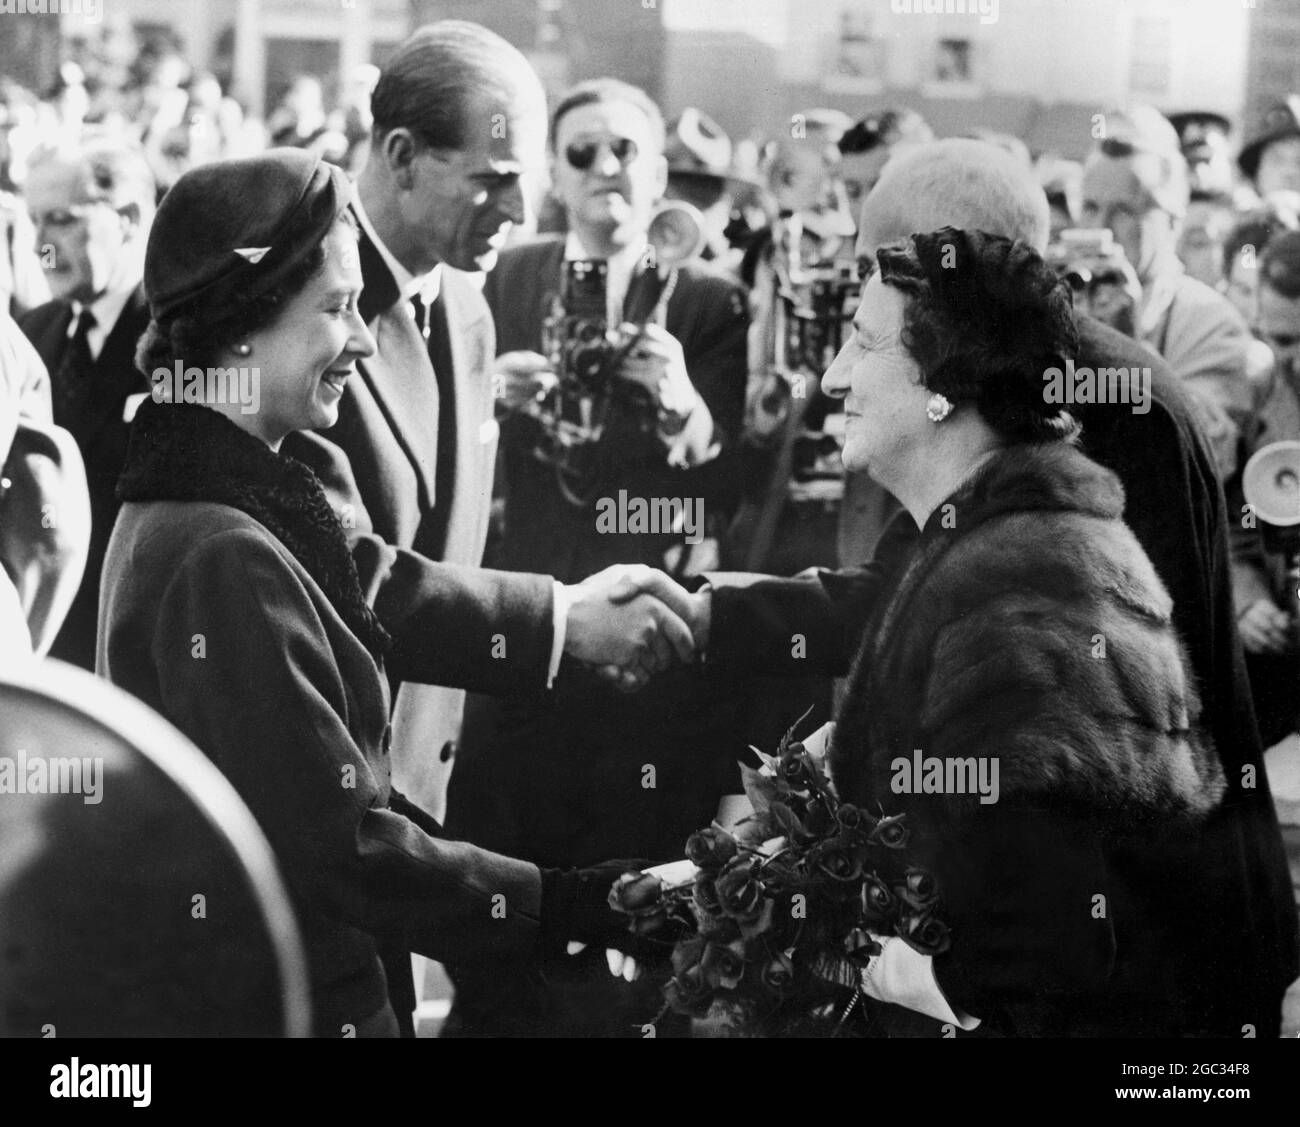 Königin Elizabeth II. Und Prinz Philip besuchen Hull, Kanada, Oktober 1957 (Bildunterschrift fehlt) Stockfoto